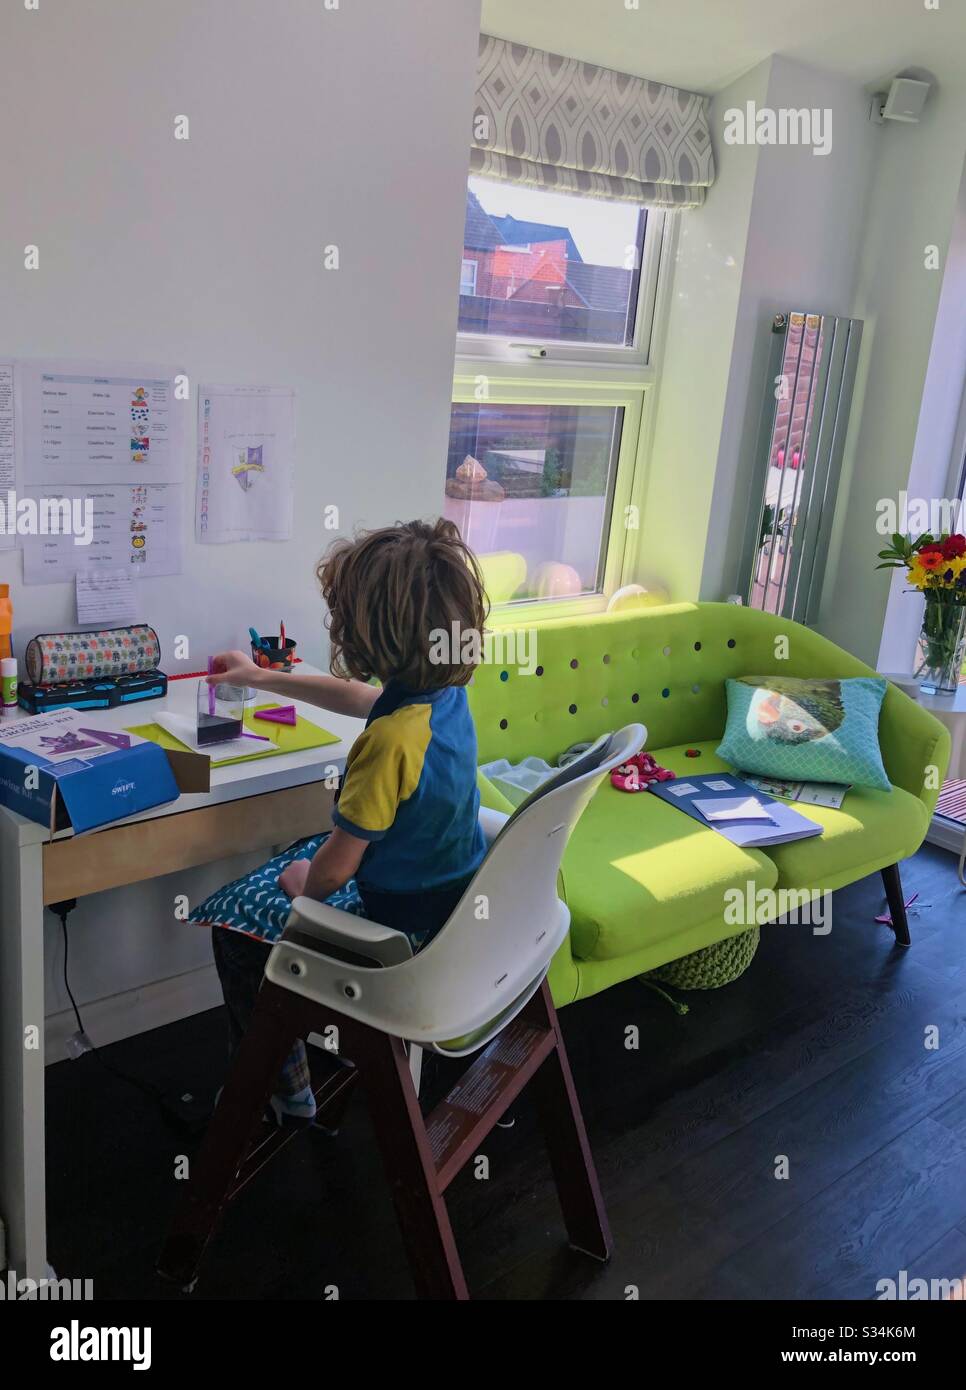 Schulbildung in der Heimat eines Jungen, die während des Lockdowns von Coronavirus im Vereinigten Königreich ein wissenschaftliches Experiment durchmacht. Stockfoto